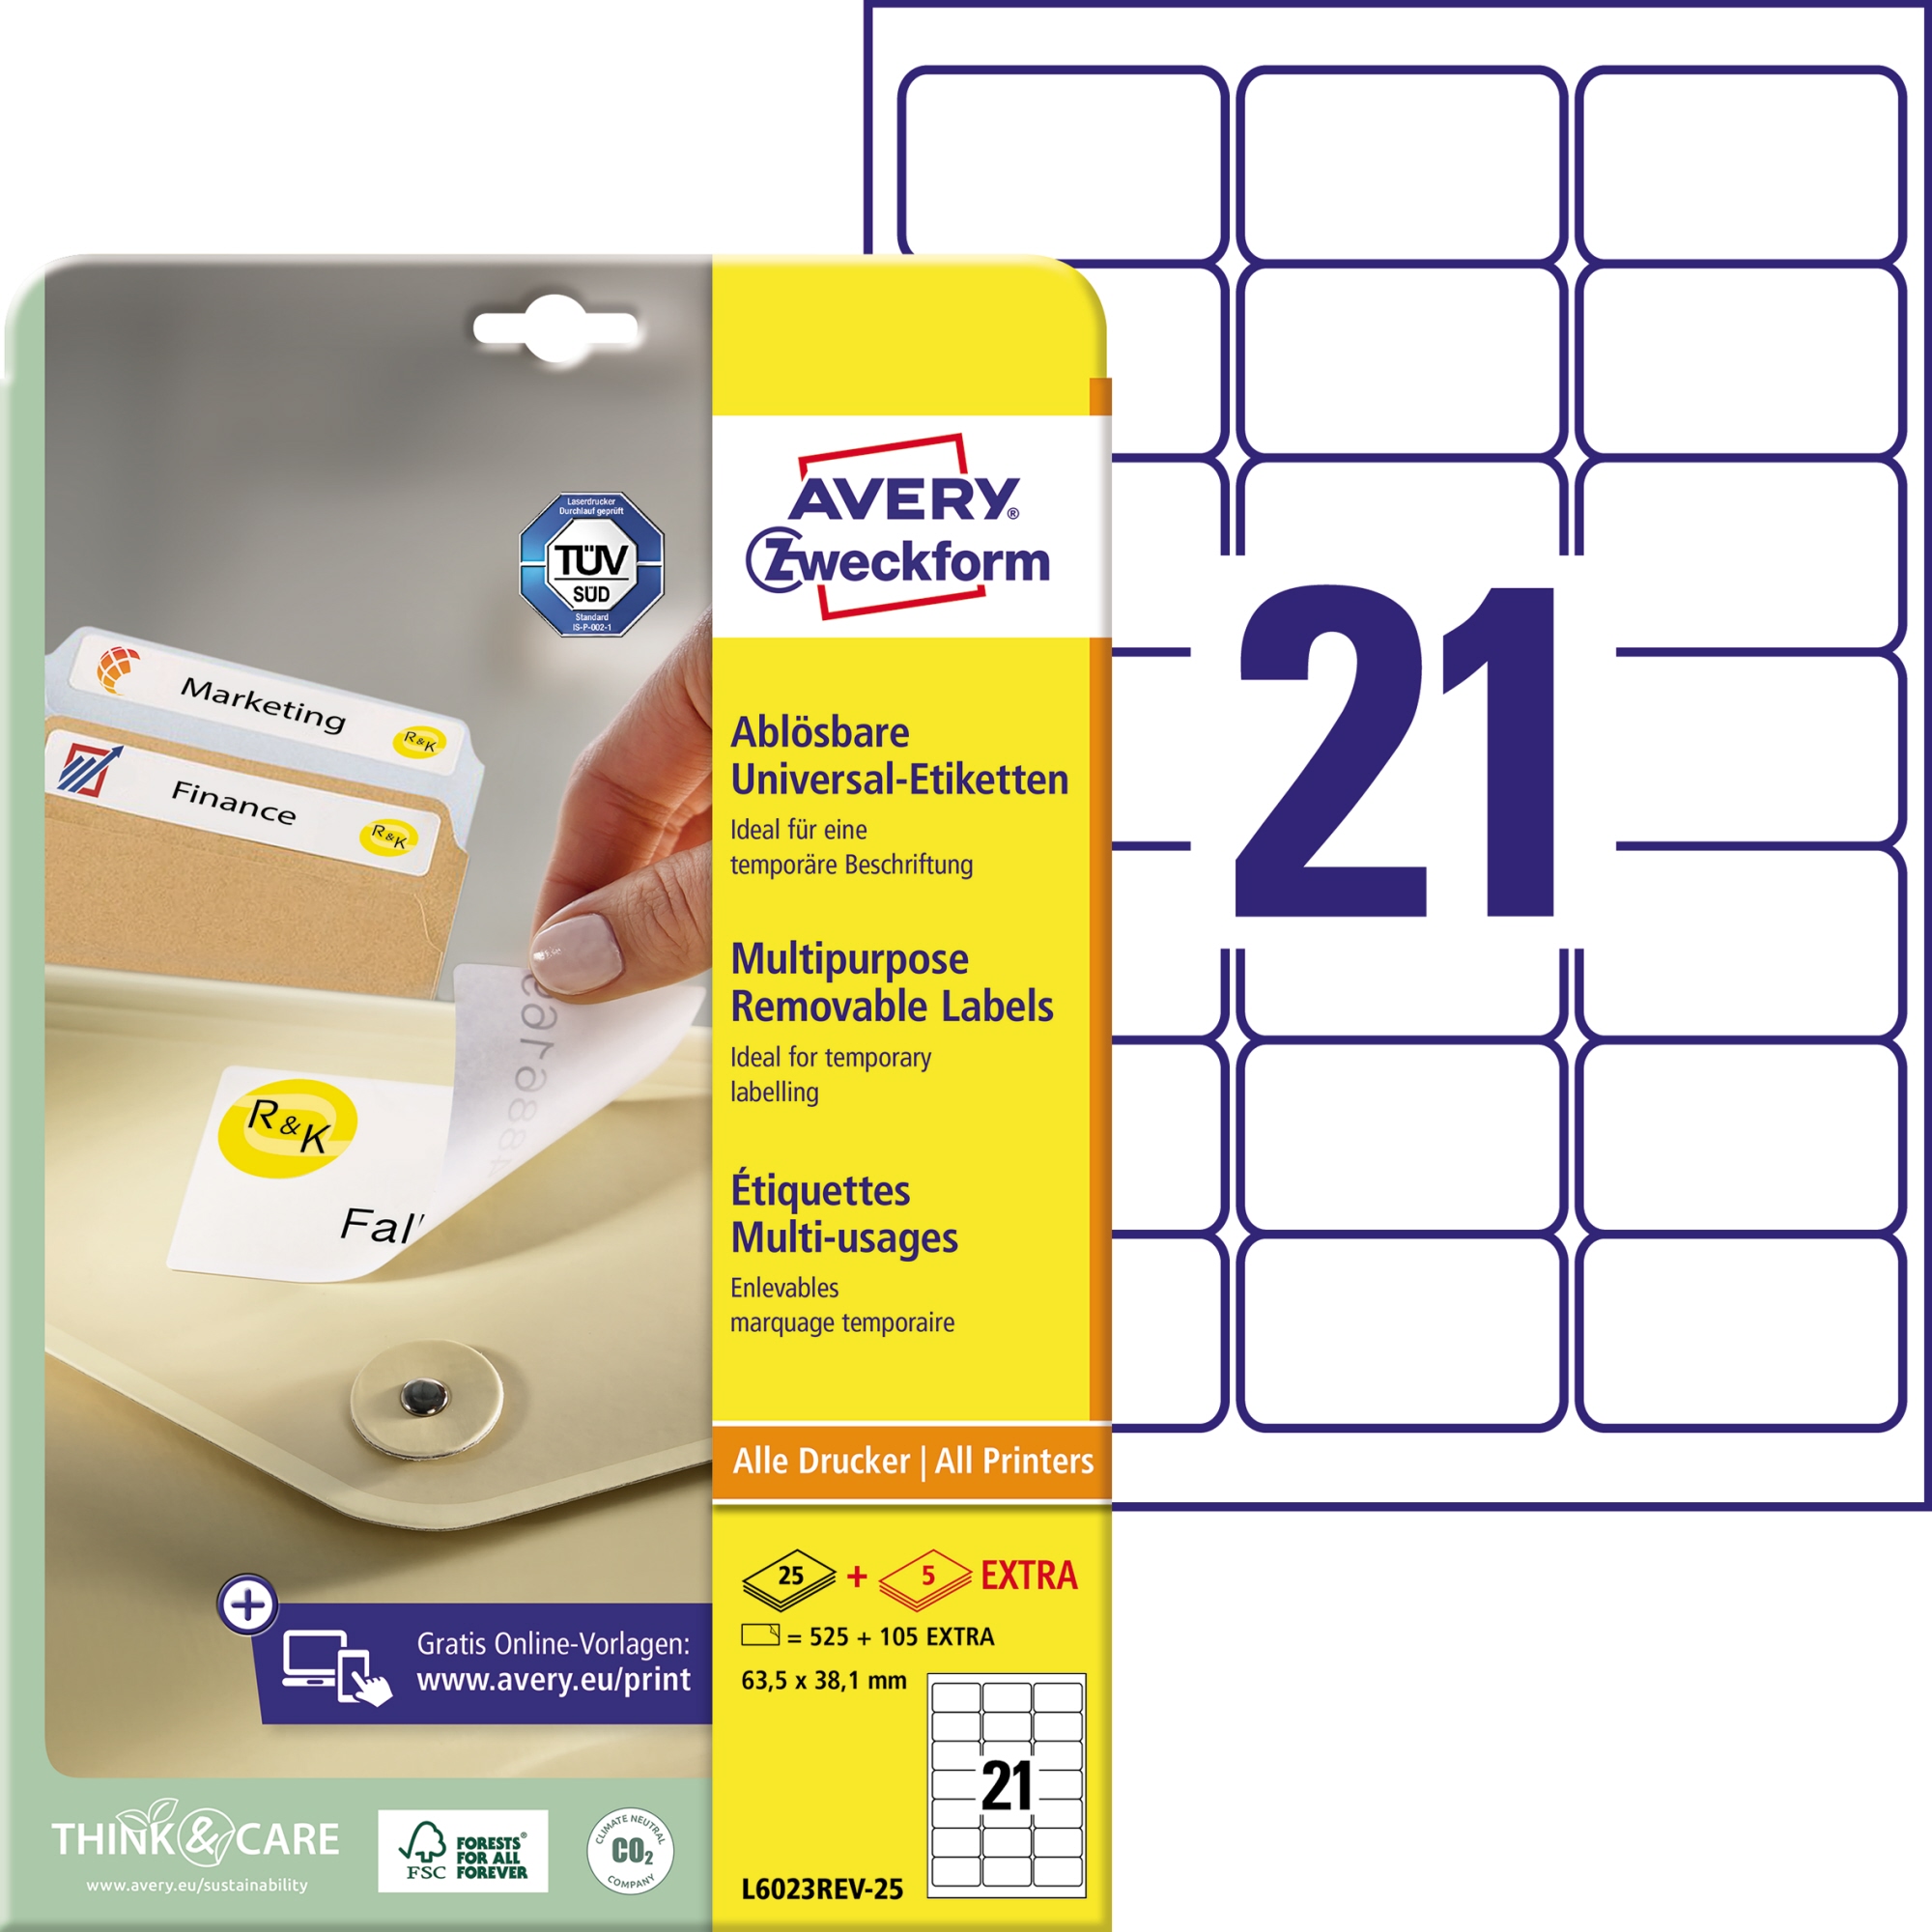 Avery Zweckform Universaletikett weiß, 63,5 x 38,1 mm, Vorteilspack + 5 Blatt gratis